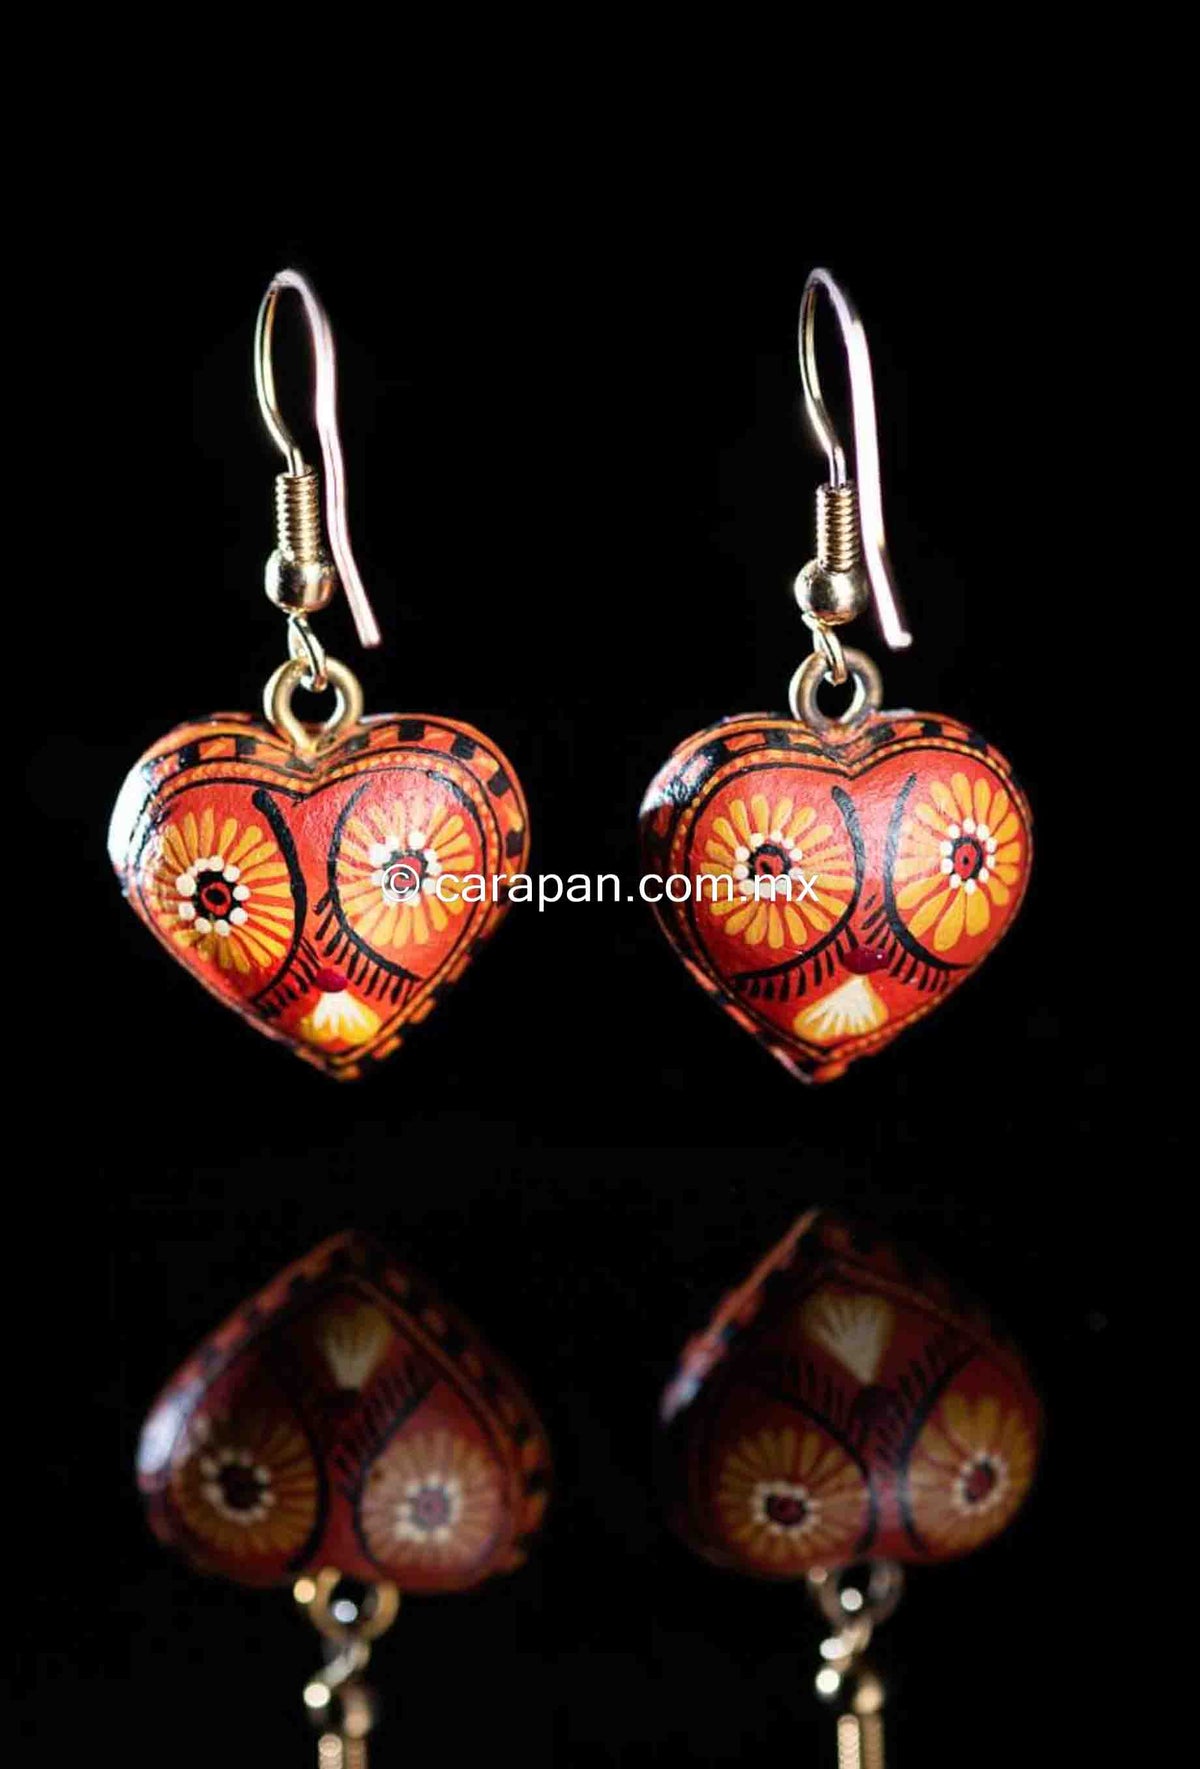 Mexican Earrings Heart Shape Hand Crafted in Oaxaca Orange Tones